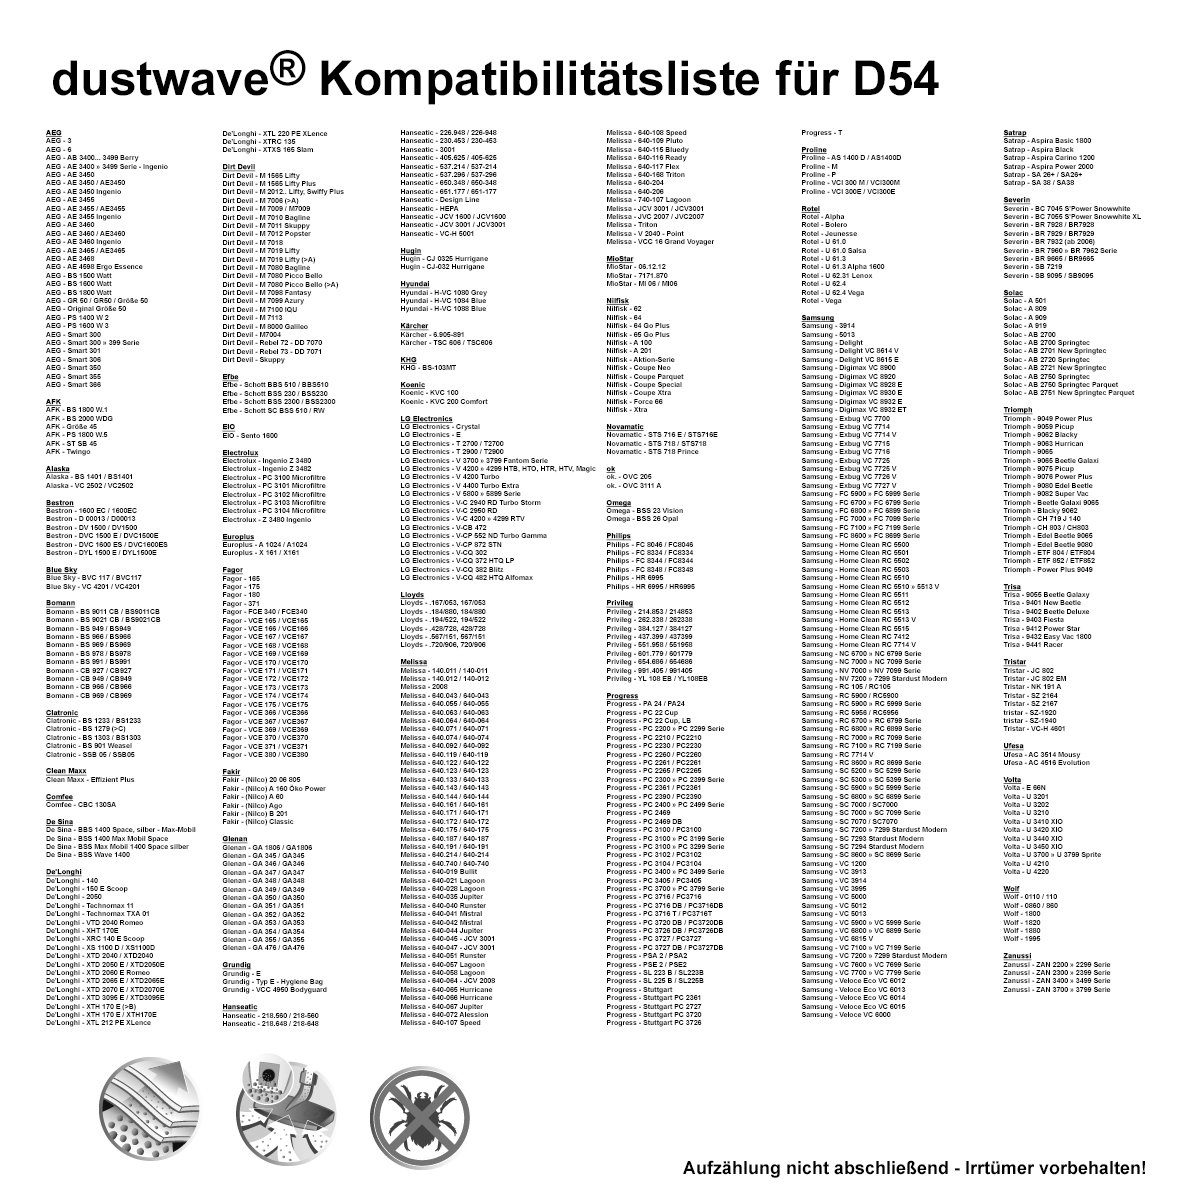 Dustwave Staubsaugerbeutel St., + für Hepa-Filter - Comfee 1 (ca. 15x15cm zuschneidbar) 1 700, Test-Set, Test-Set, CVCB 1 passend Staubsaugerbeutel